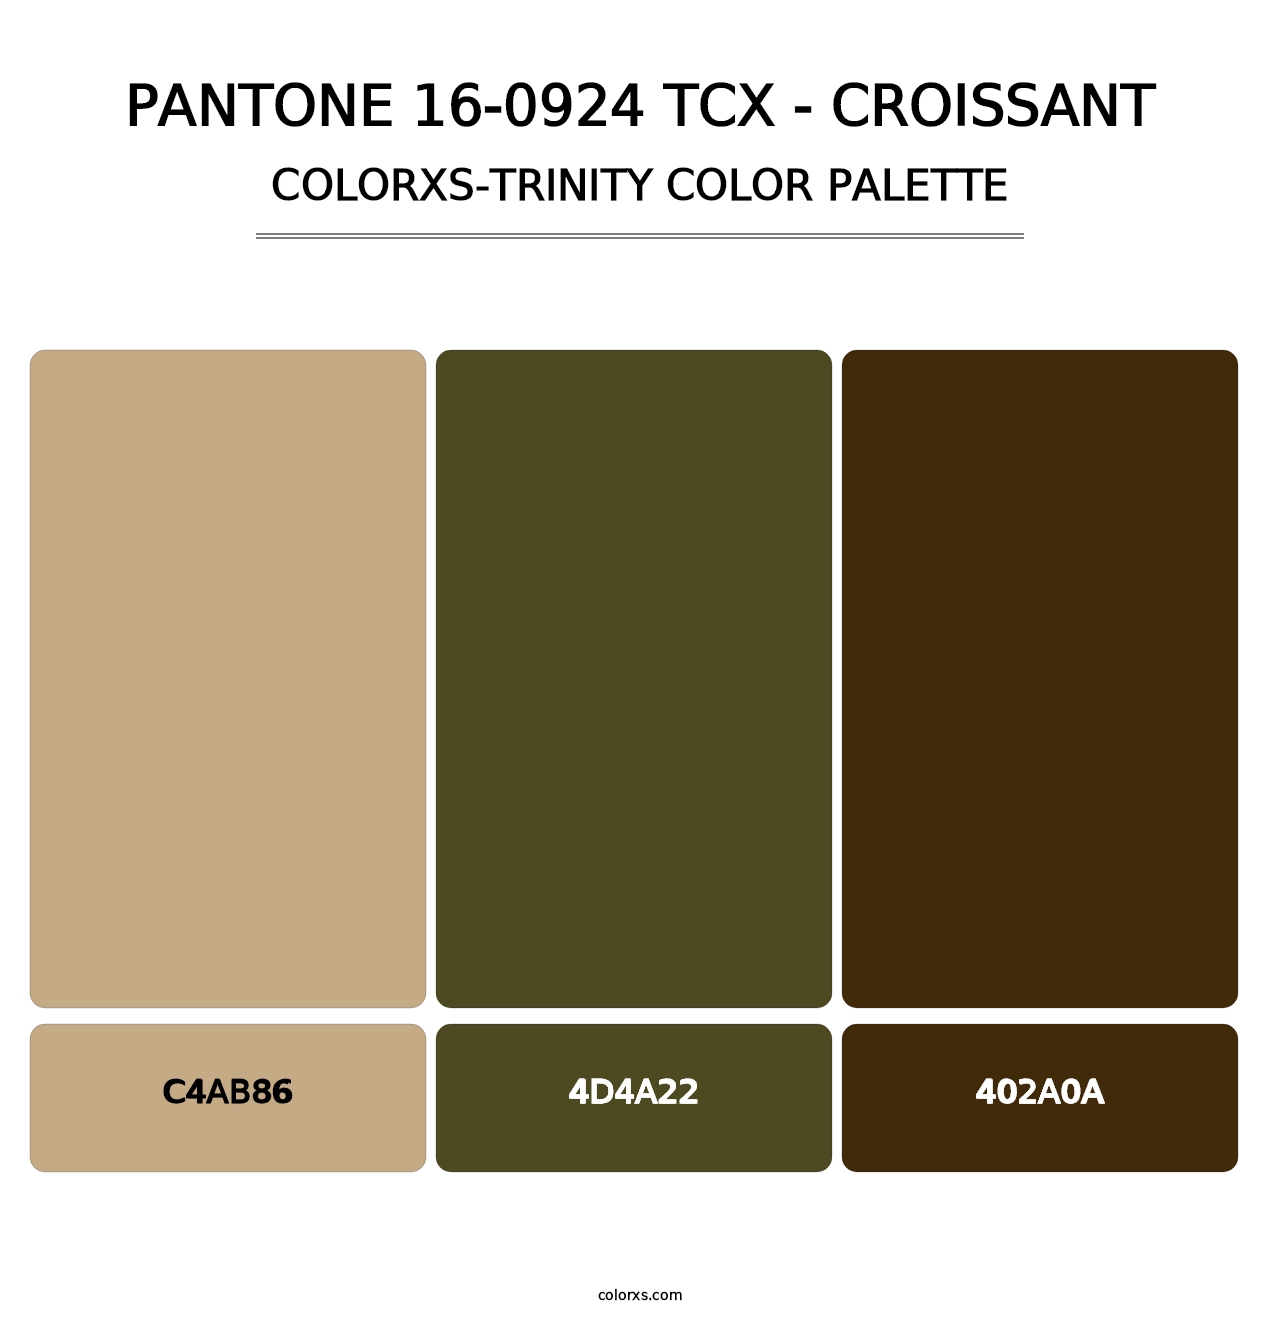 PANTONE 16-0924 TCX - Croissant - Colorxs Trinity Palette